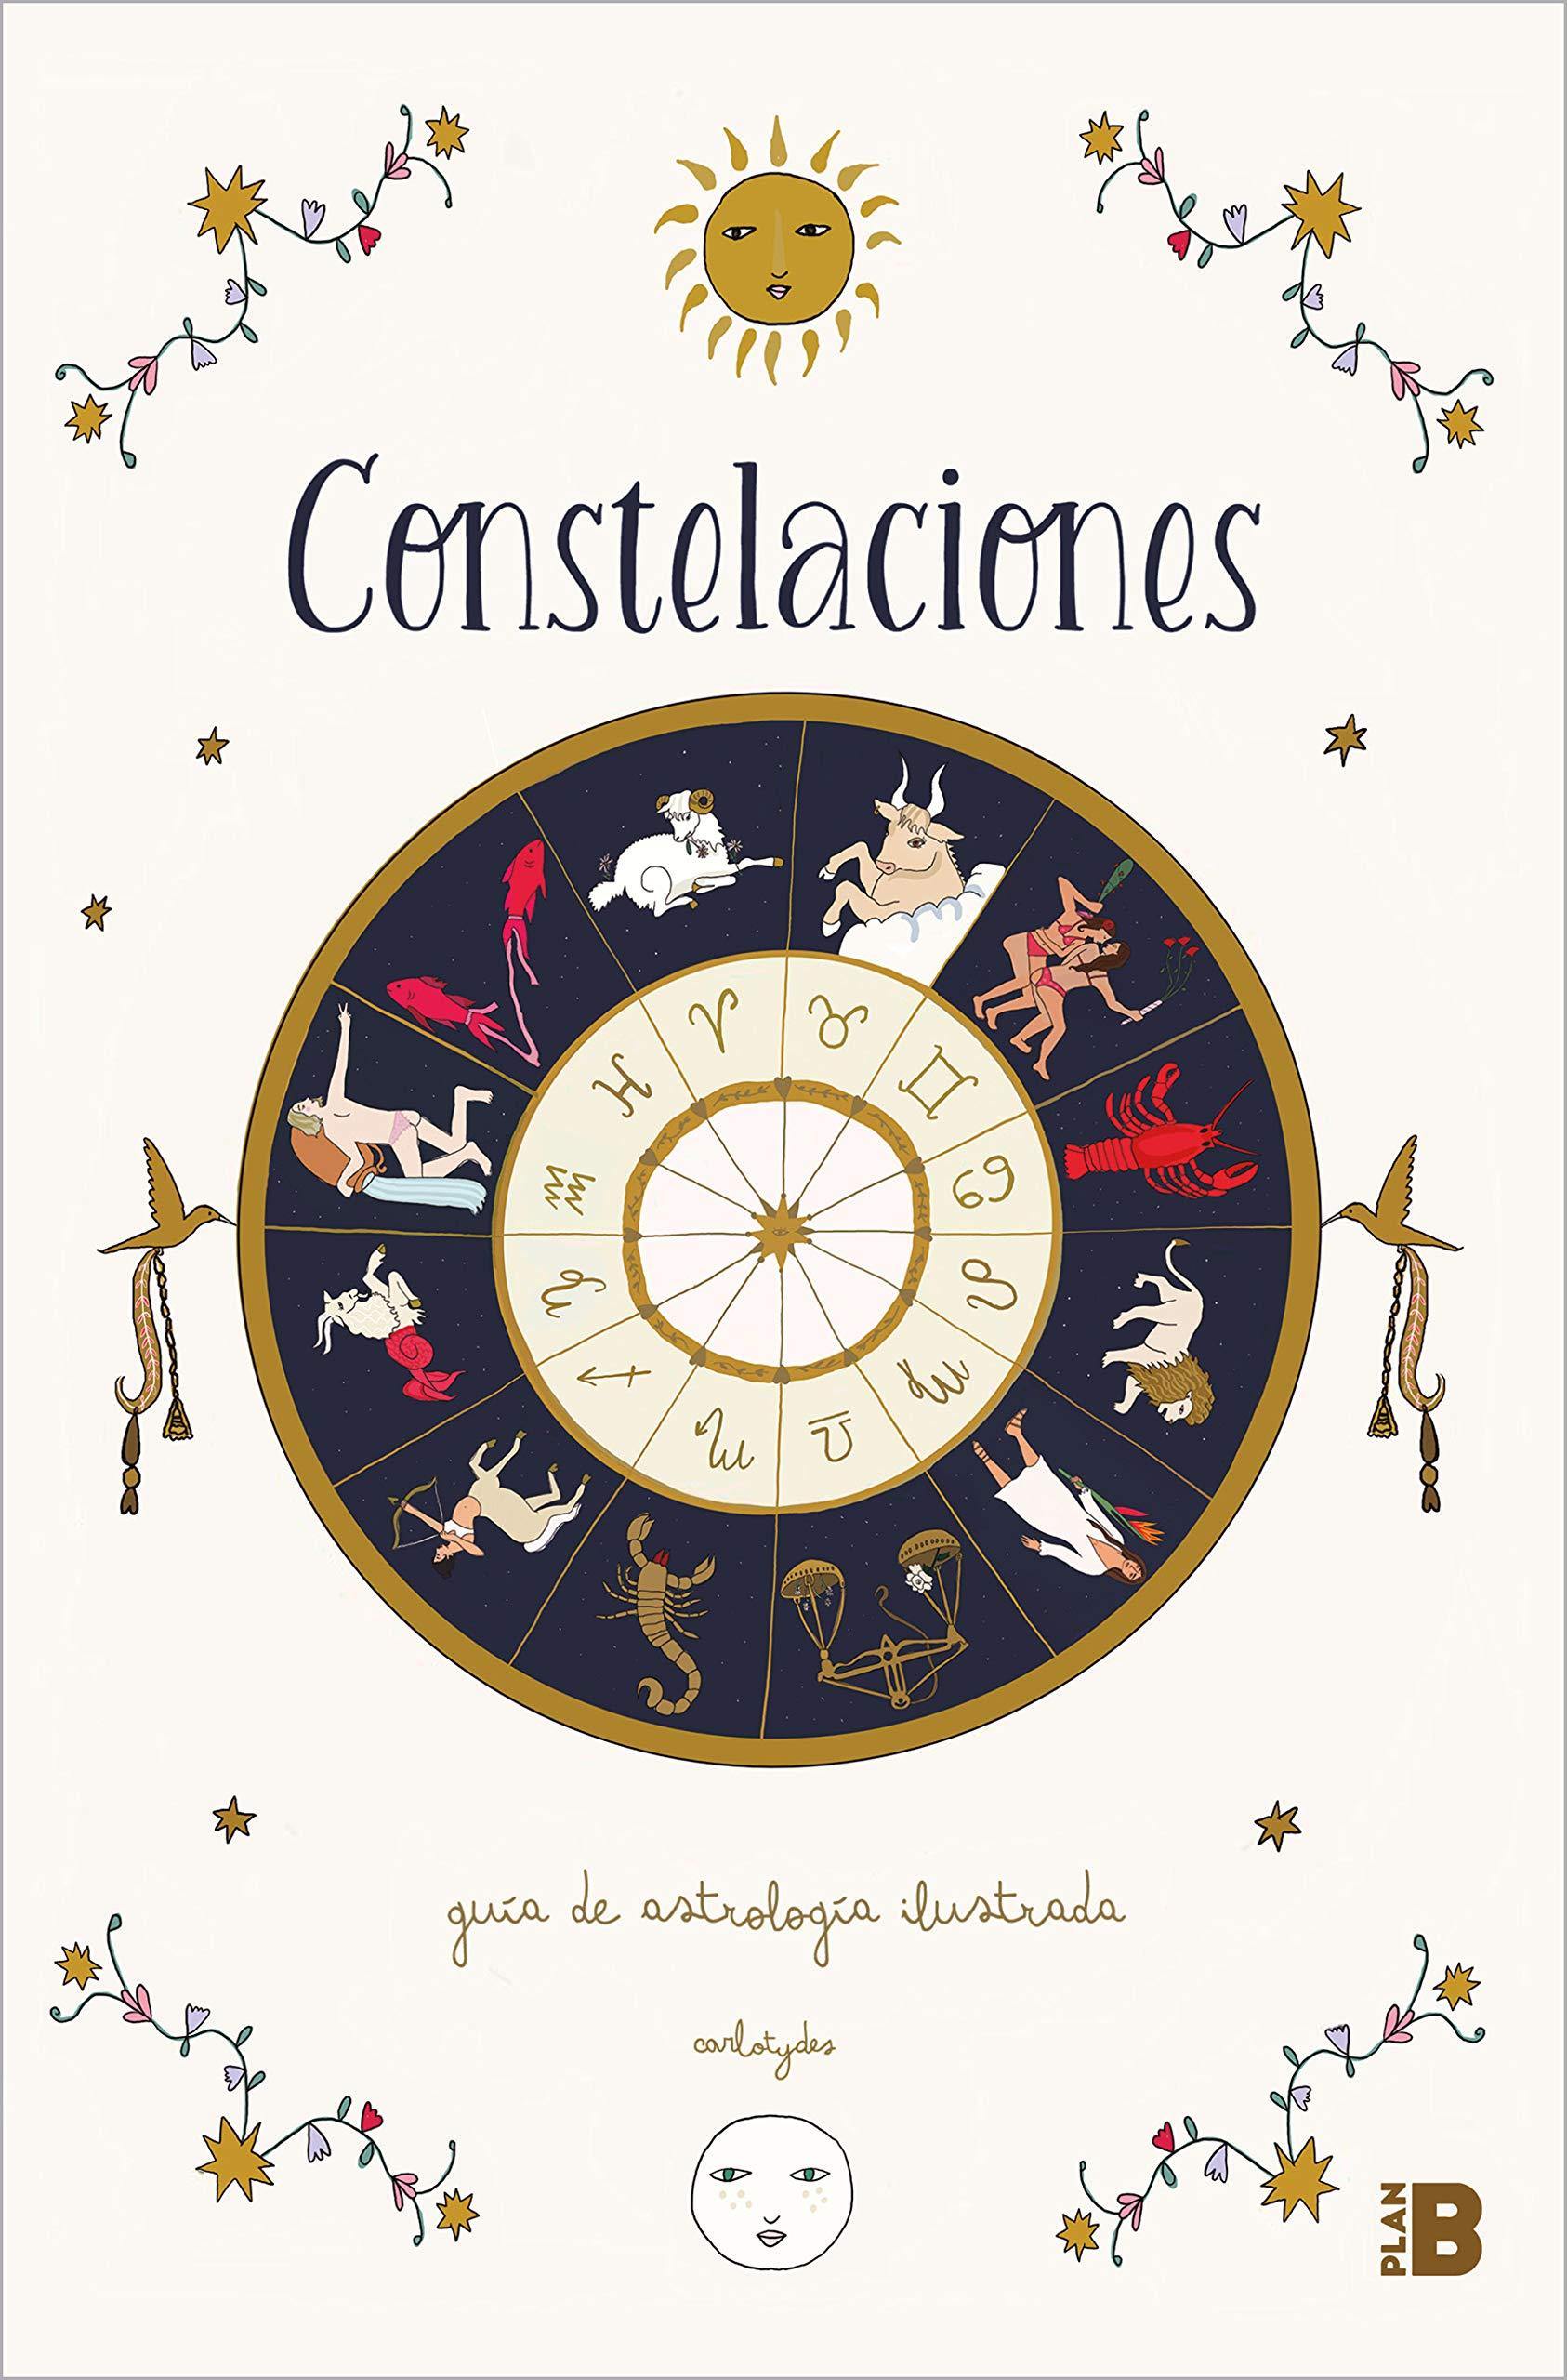 Constelaciones - Carlota Santos - Antevasin's Store